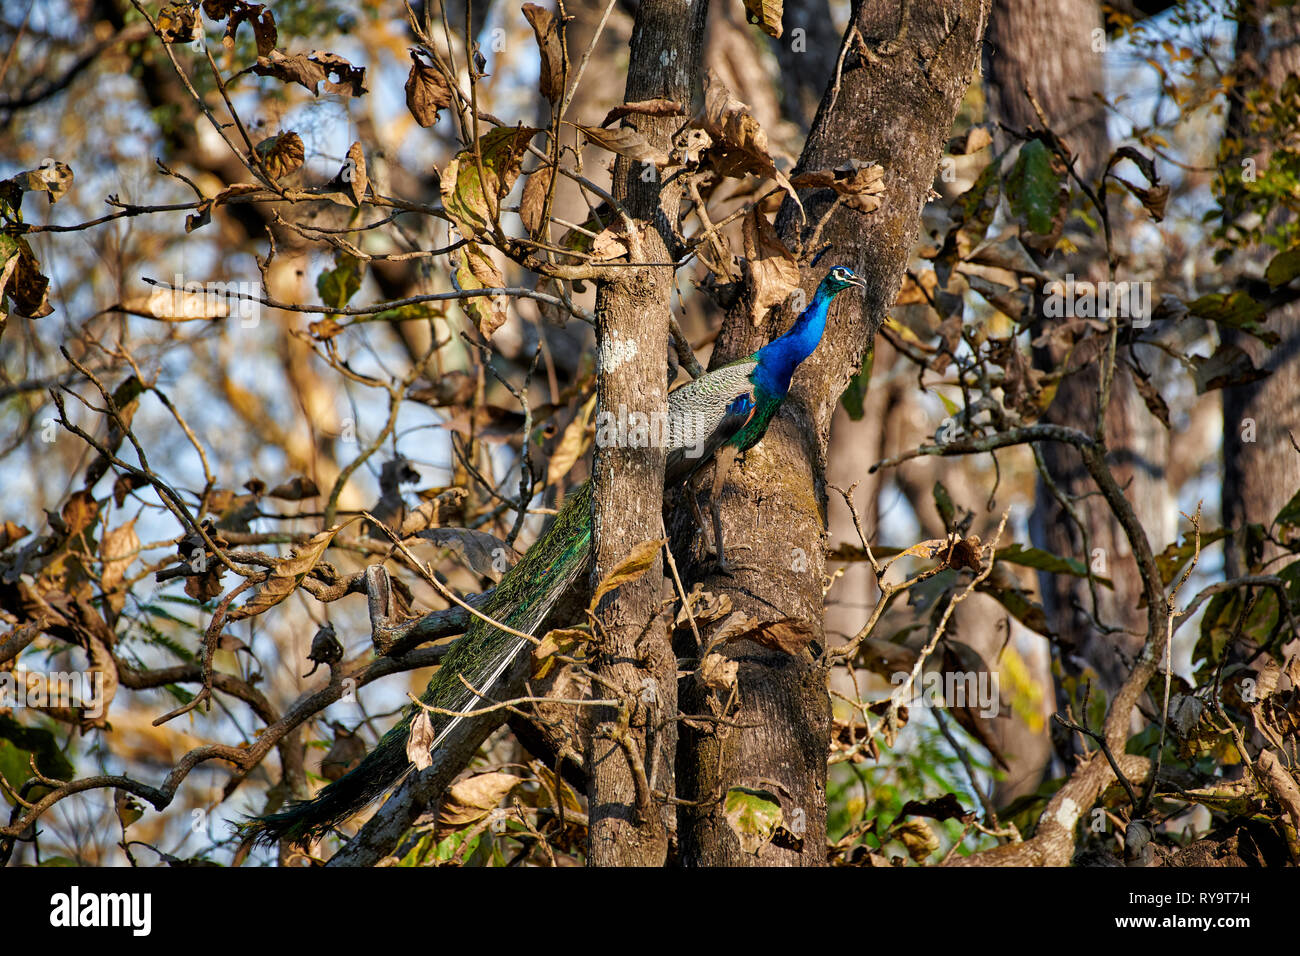 Peacocksitting commun dans un arbre, indienne ou paons paons bleus, Pavo cristatus, Donets, Nagarhole Tiger Reserve, Karnataka, Inde Banque D'Images